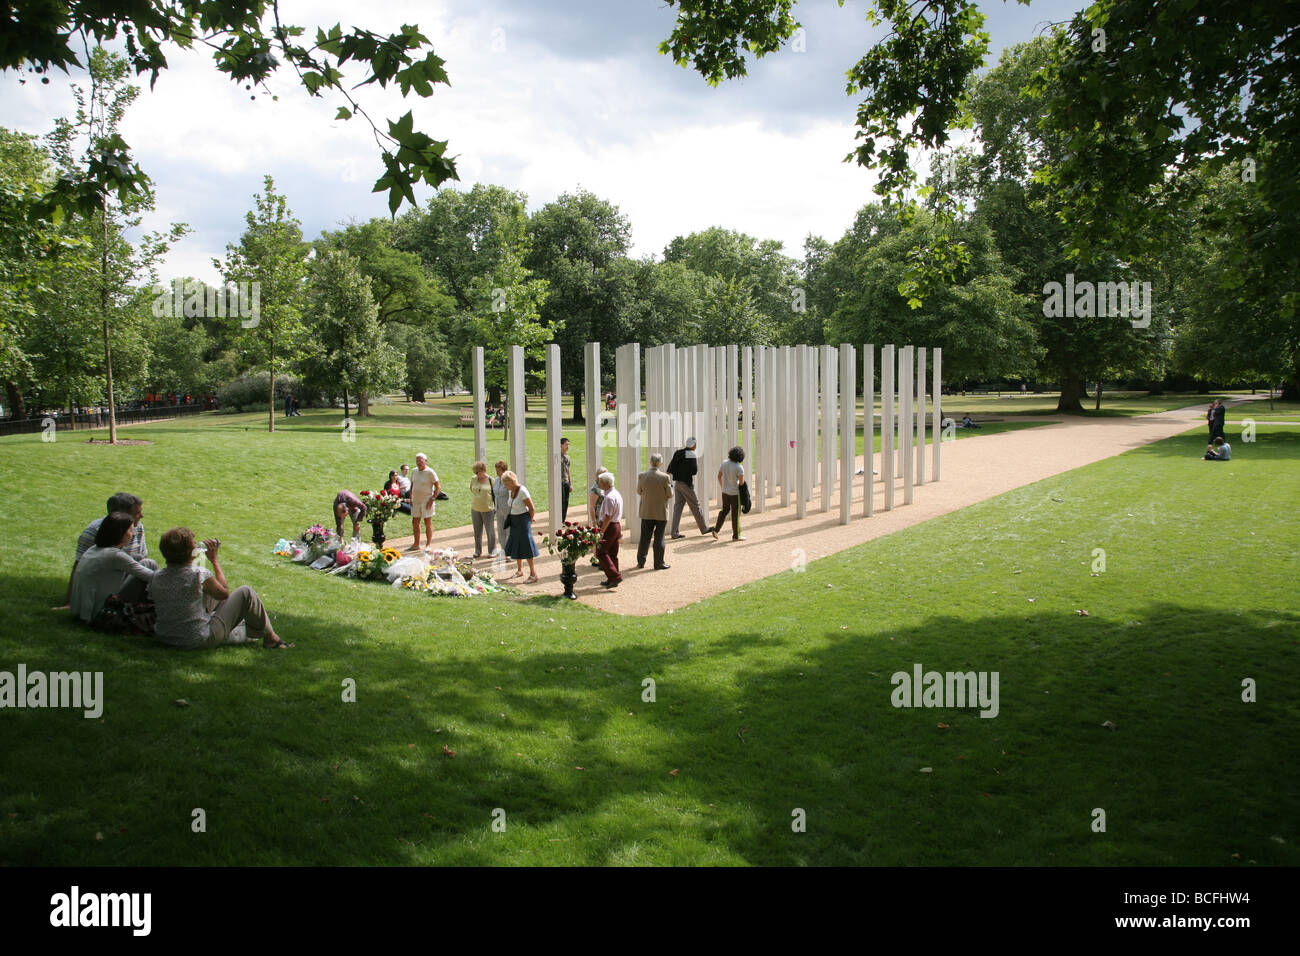 Monumento a las víctimas del atentado terrorista en Londres el 7 de julio de 2005, Hyde Park, Londres, Reino Unido. Foto de stock